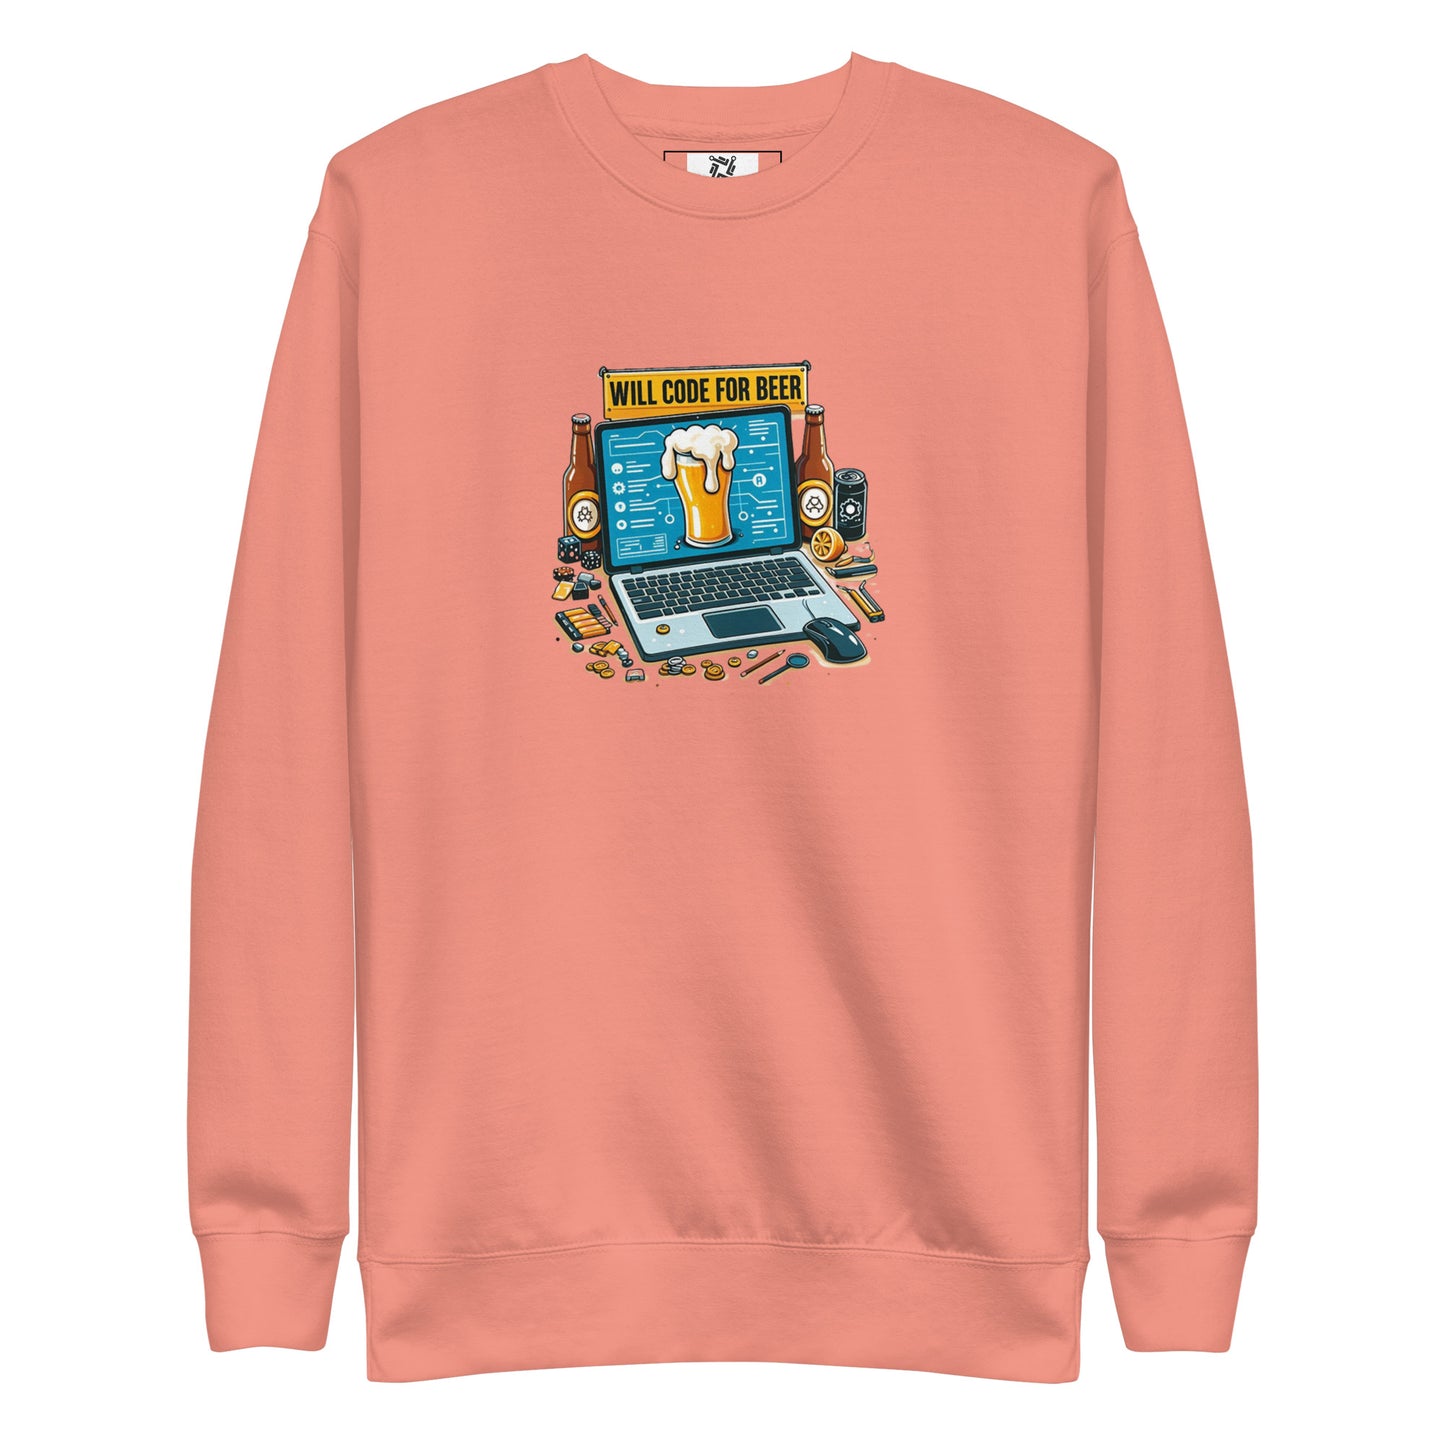 Code For Beer Sweatshirt